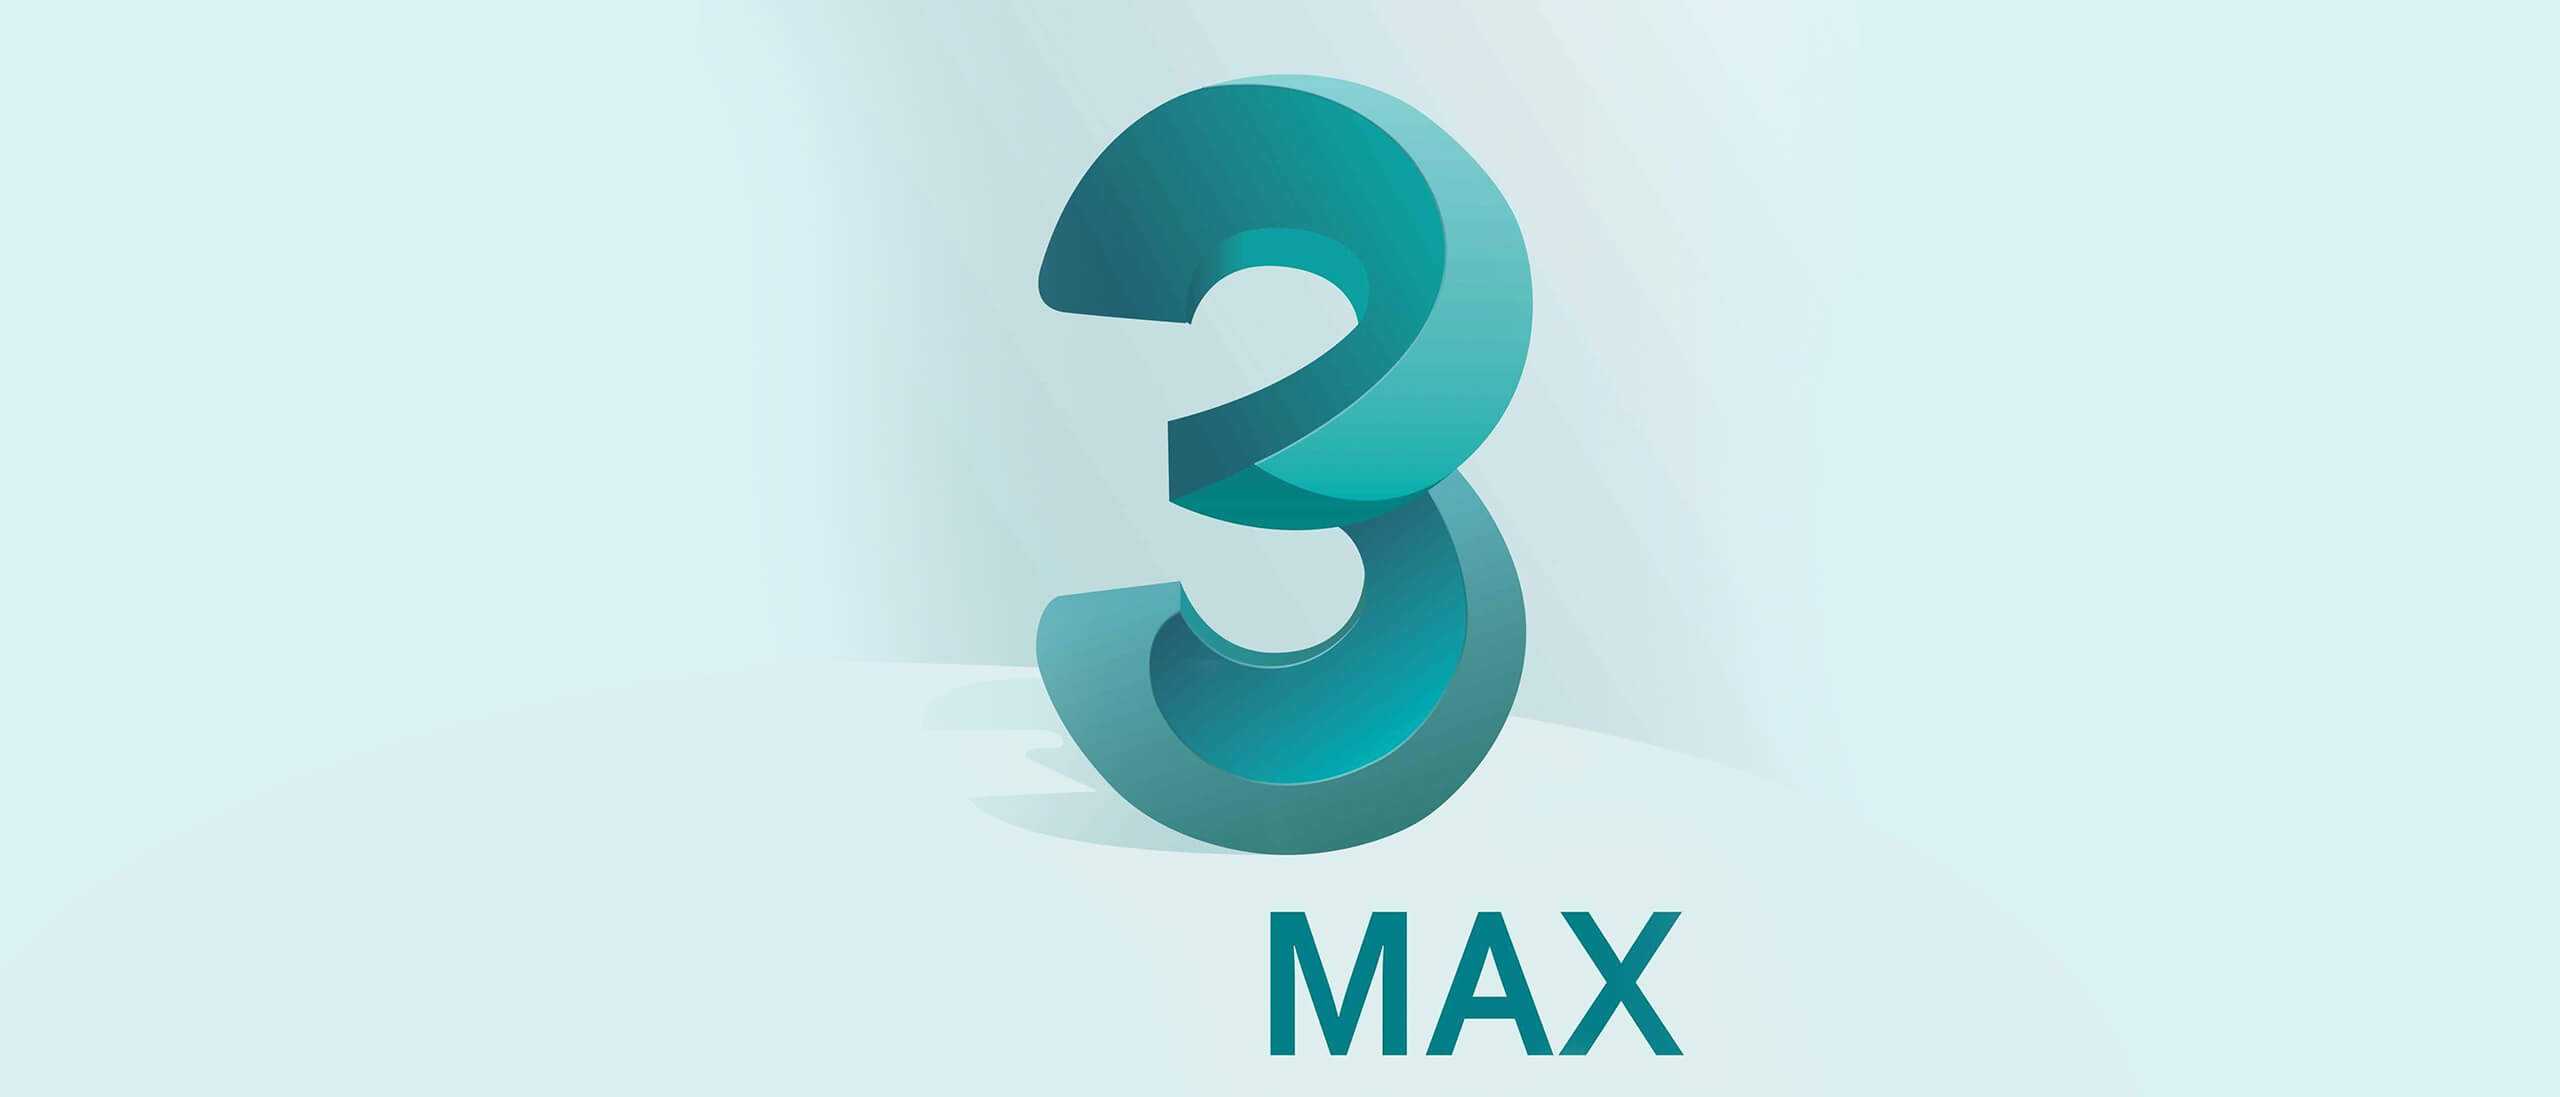 Tổng quan về 3Ds Max